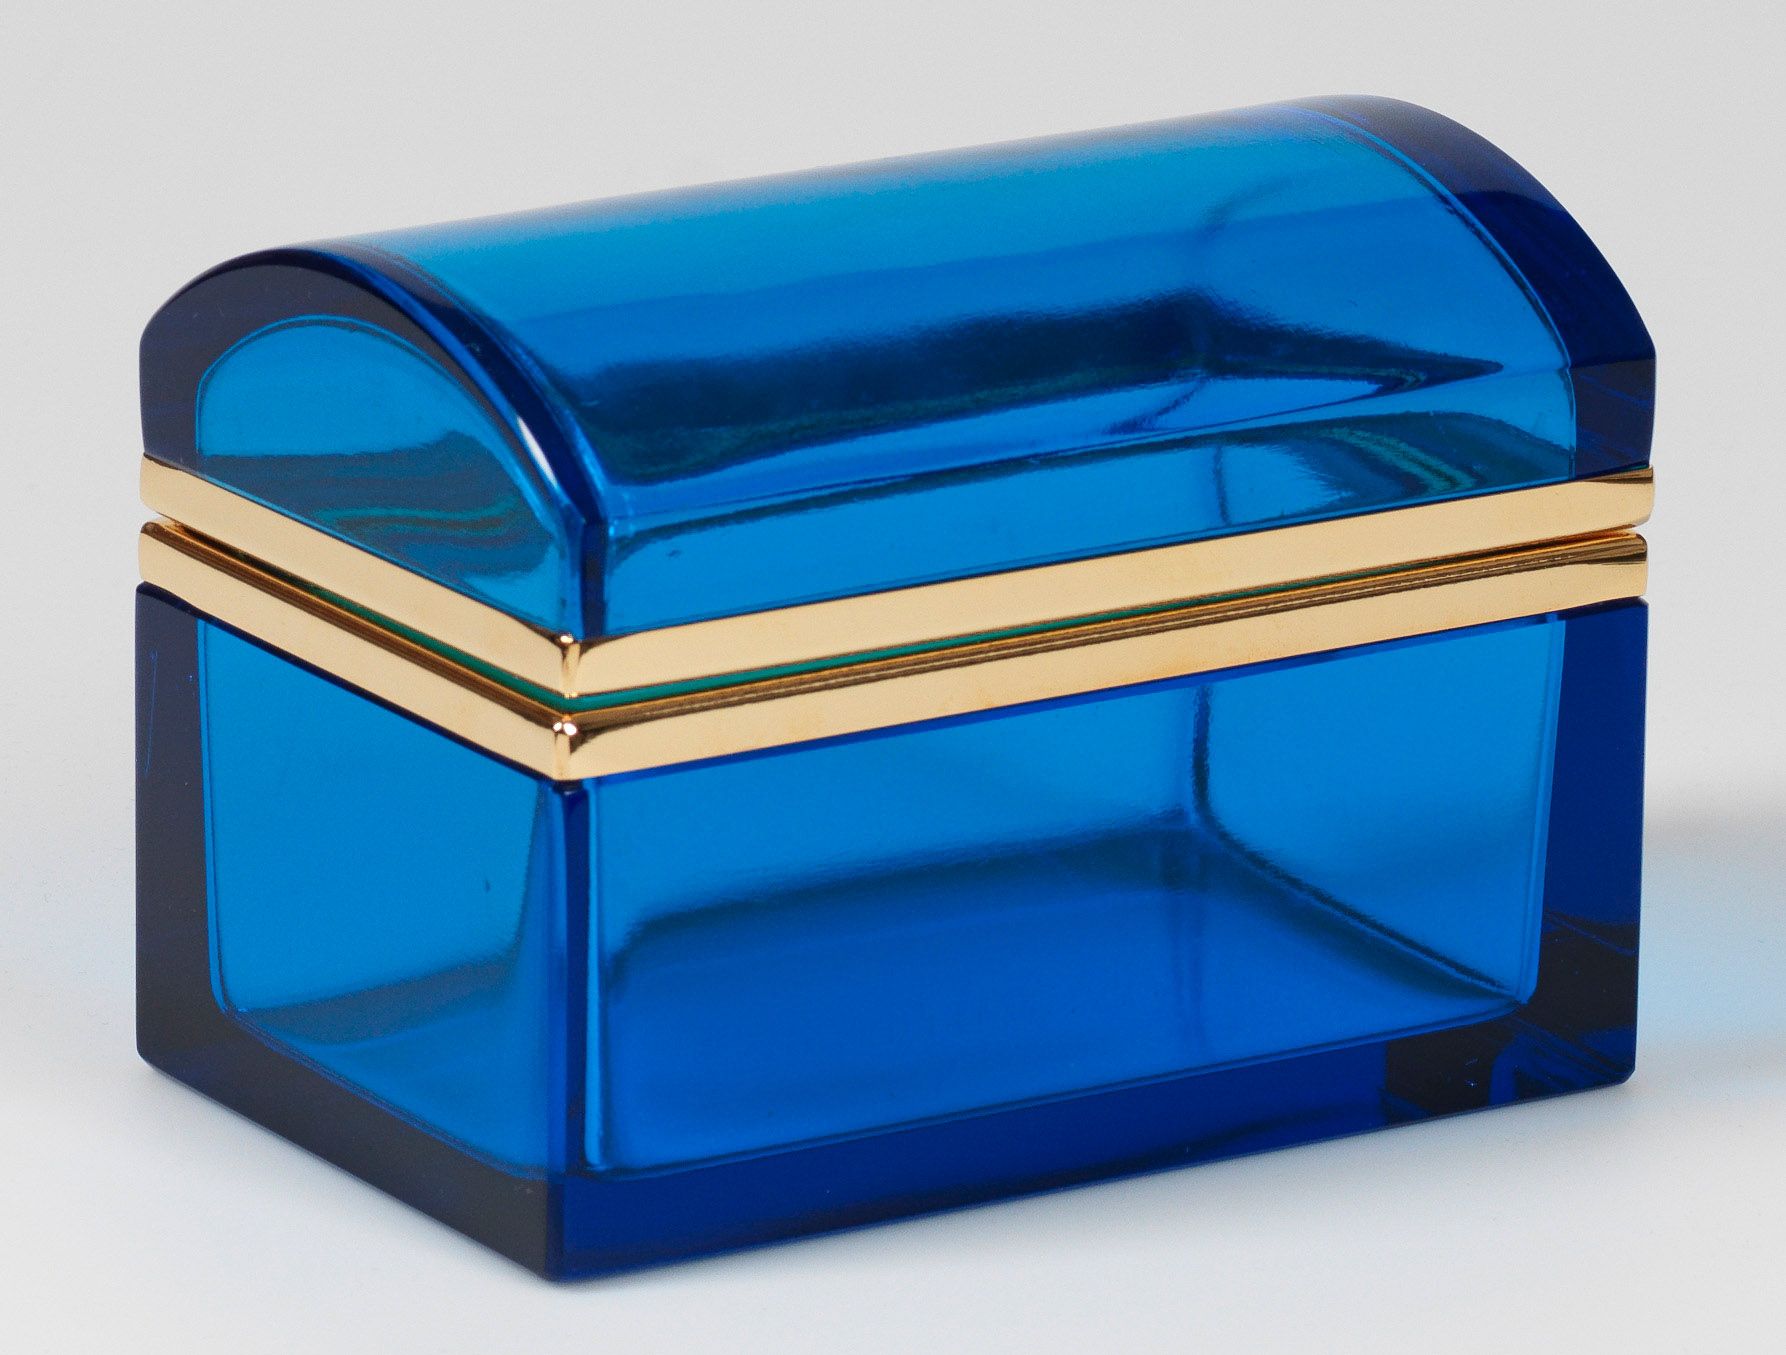 Null 装饰艺术盒 长方形柜子，带圆形盖子。深蓝色透明玻璃经切割和抛光处理。黄铜铰链座。高 9.8 厘米，13.5 厘米 x 8.5 厘米。
一个法国装饰艺术&hellip;